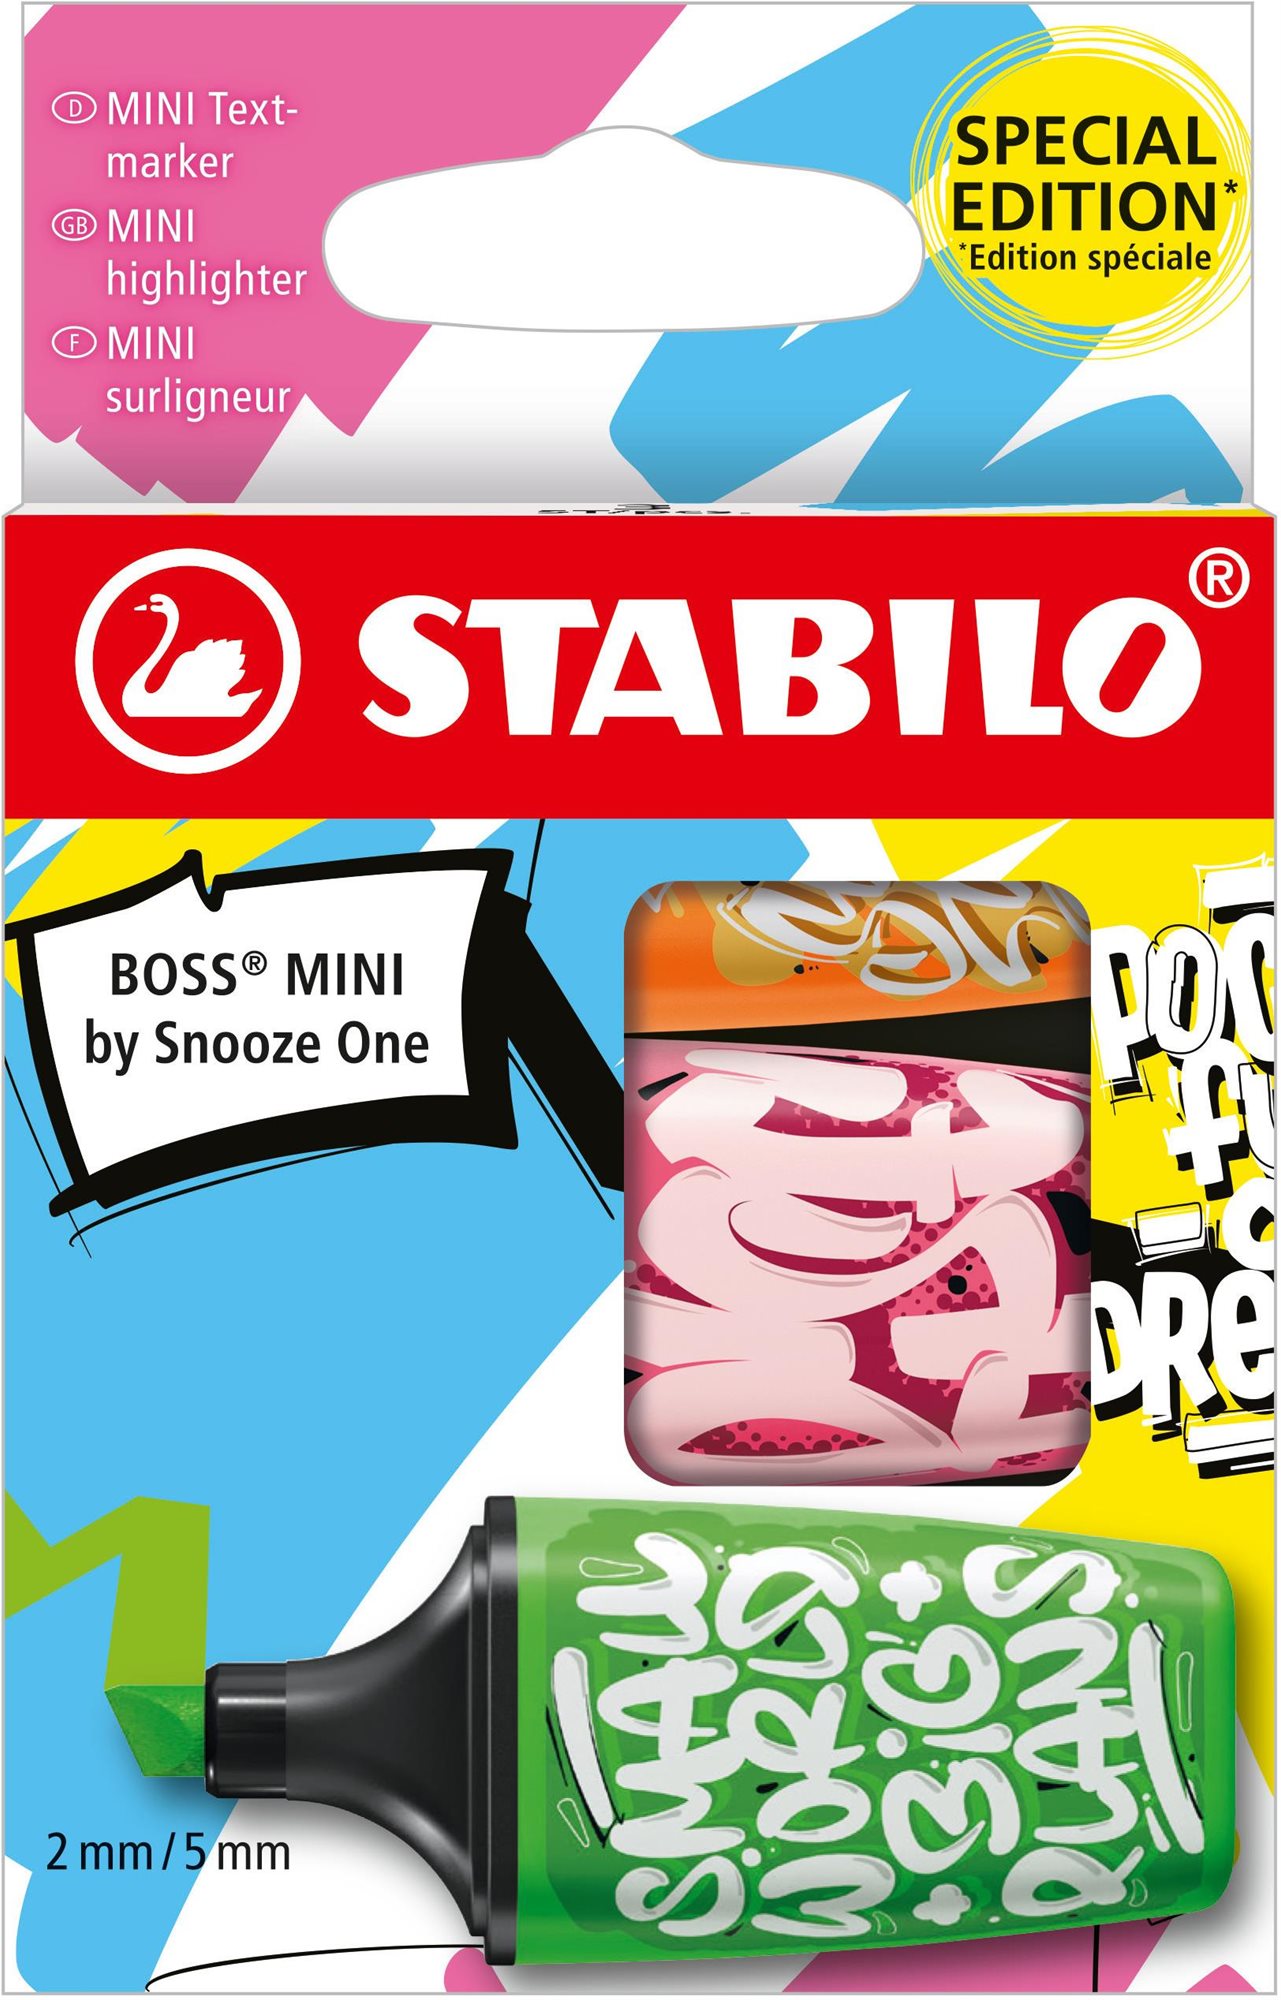 STABILO BOSS MINI by Snooze One - 3 db-os szett - narancsszín, rózsaszín, zöld